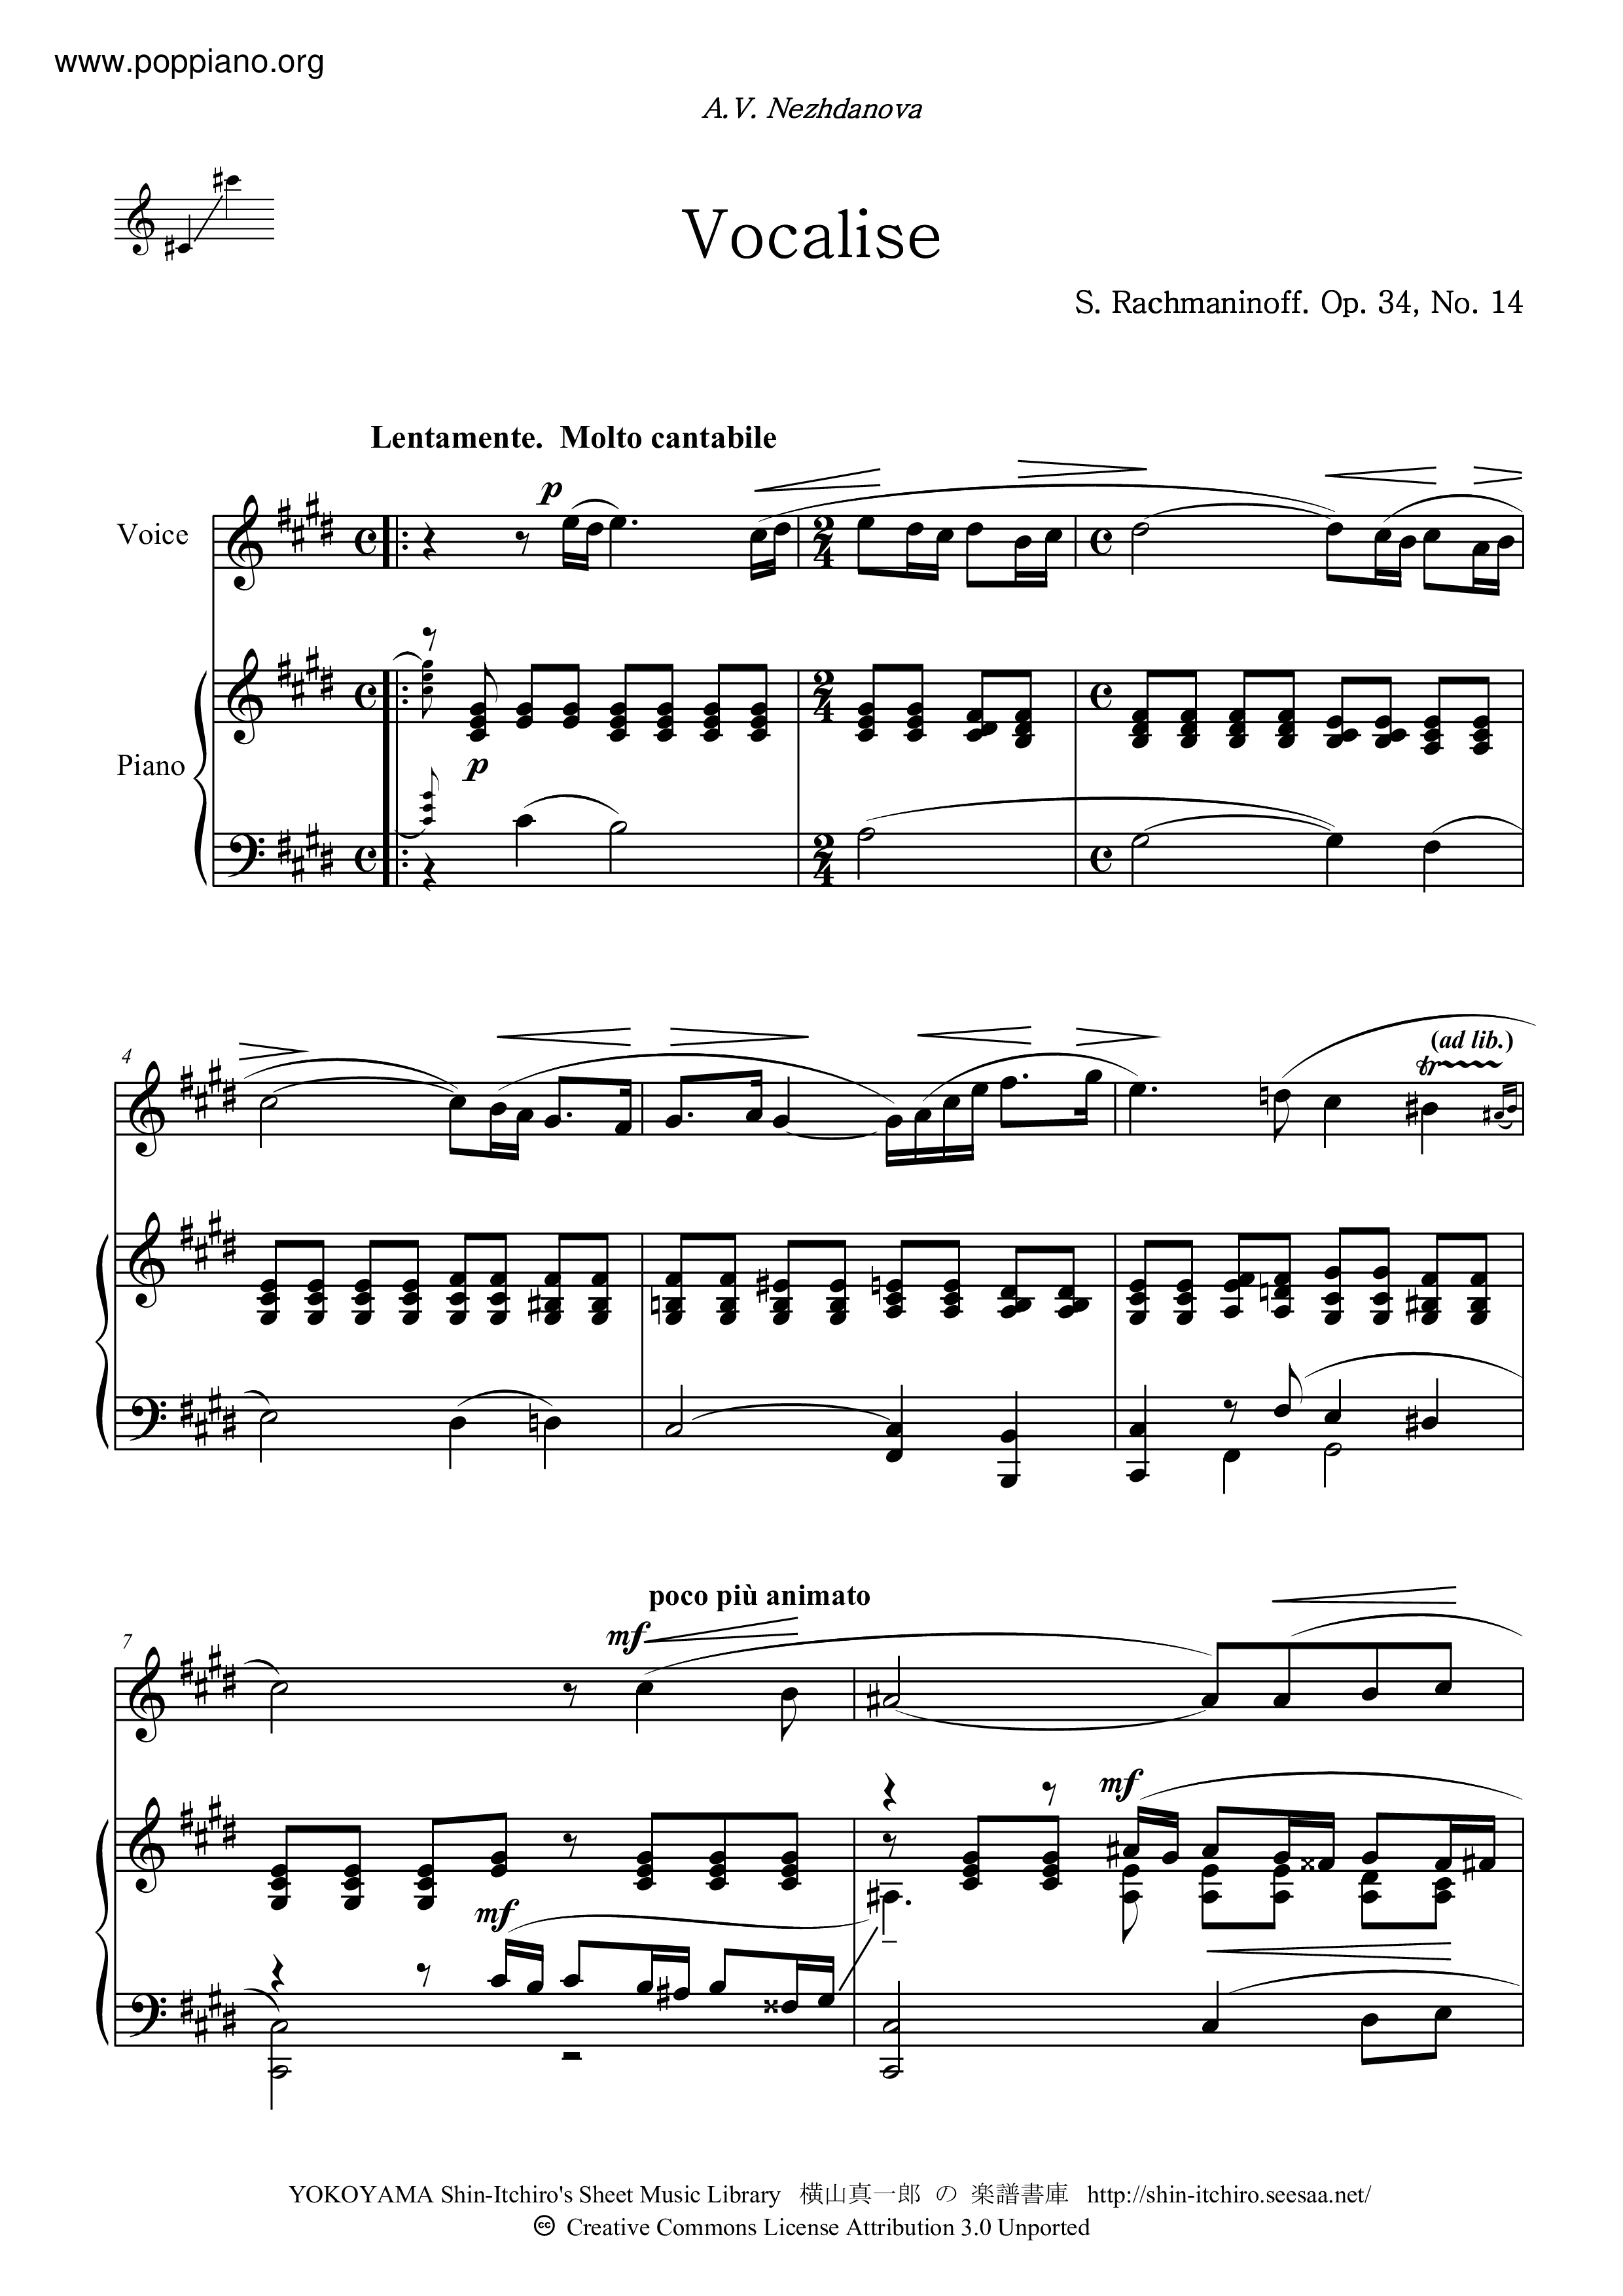 Vocalise, Op.34, No.14 Score